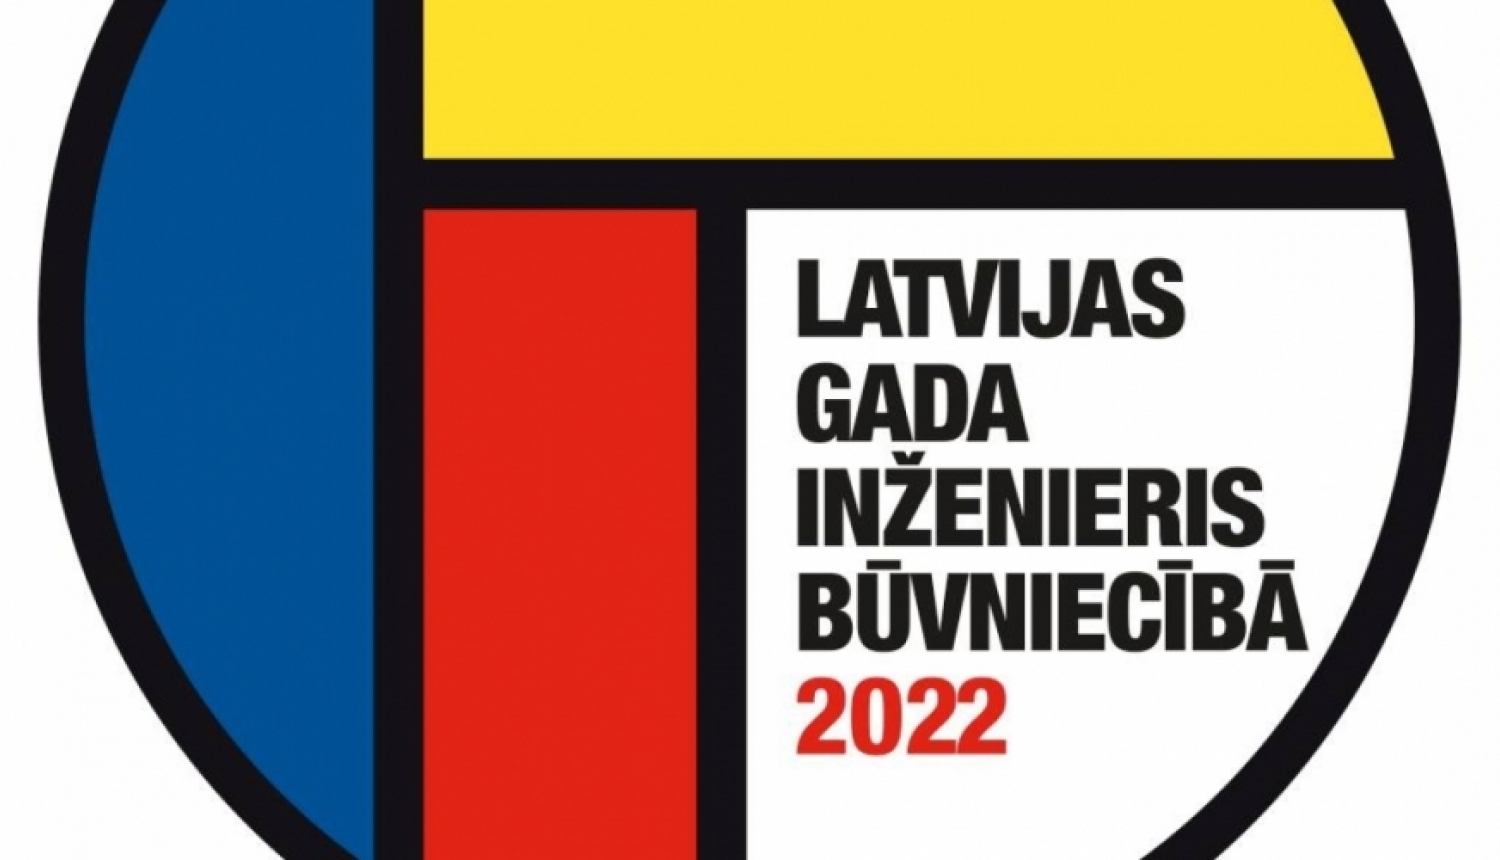 “Latvijas Gada inženieris būvniecībā 2022” logo